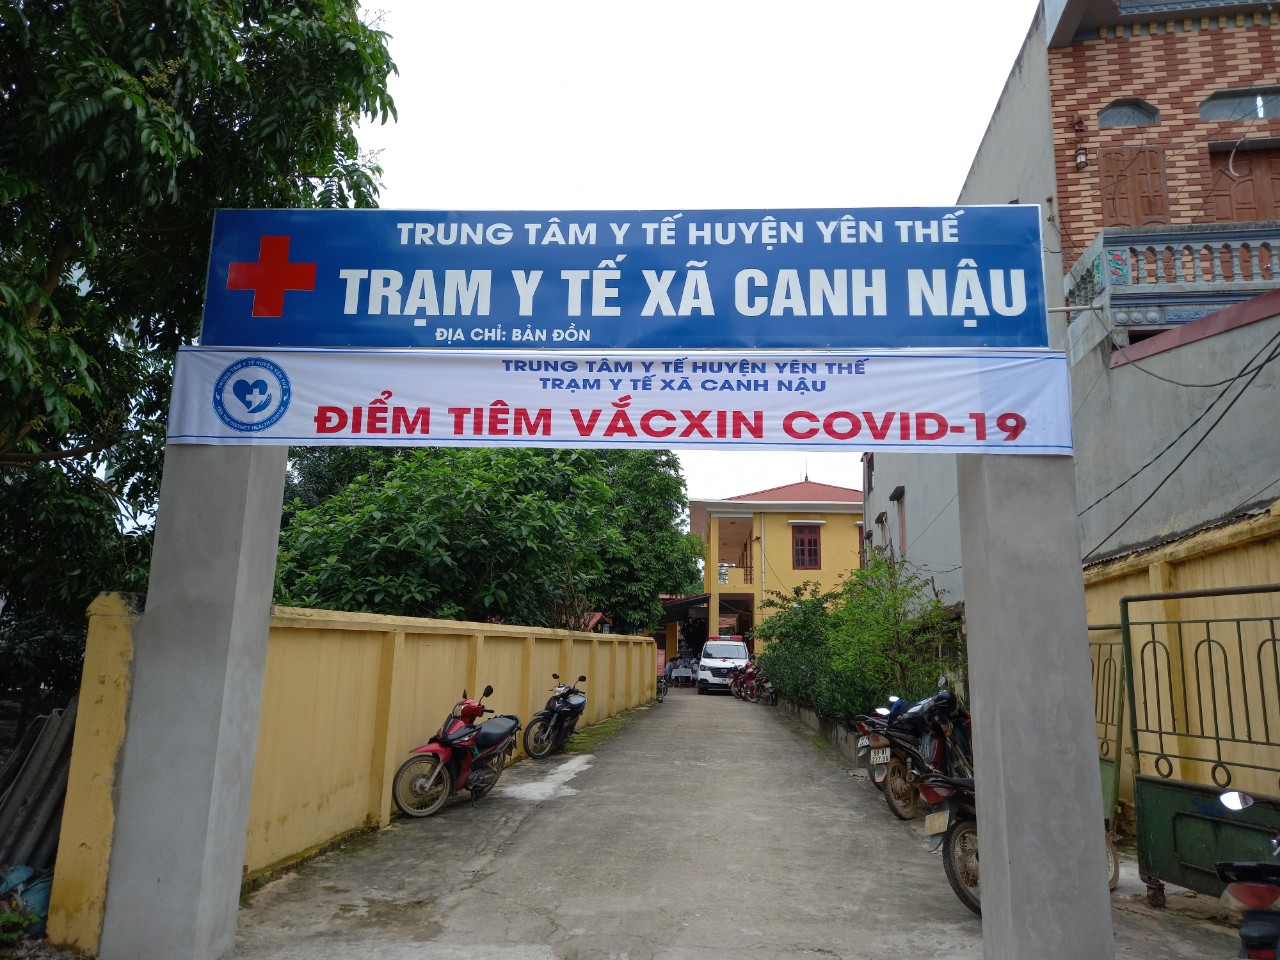 Yên Thế tổ chức tiêm vắc xin phòng Covid 19 cho 285 đối tượng tại điểm tiêm xã Canh Nậu